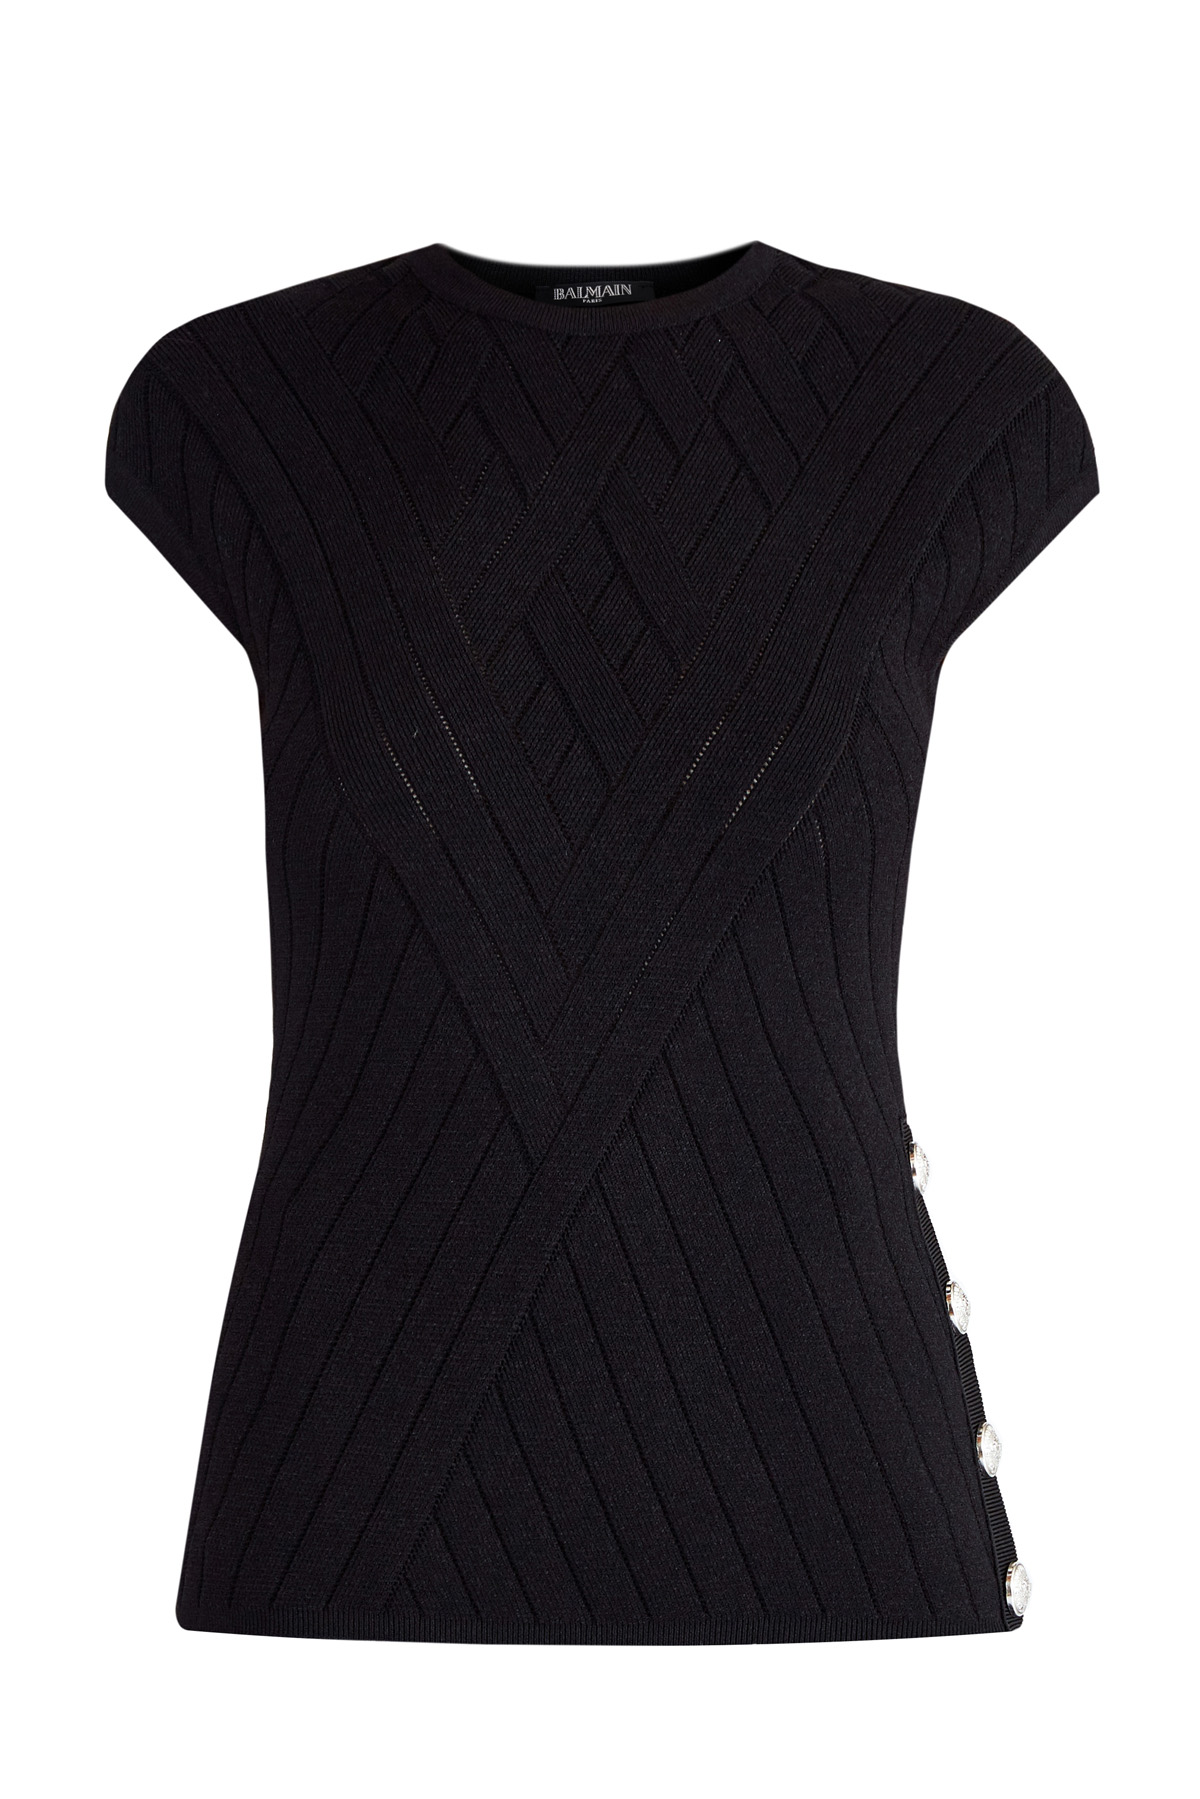 Тонкий вязаный джемпер с эффектом плетения и перфорацией BALMAIN, цвет черный, размер 42 - фото 1